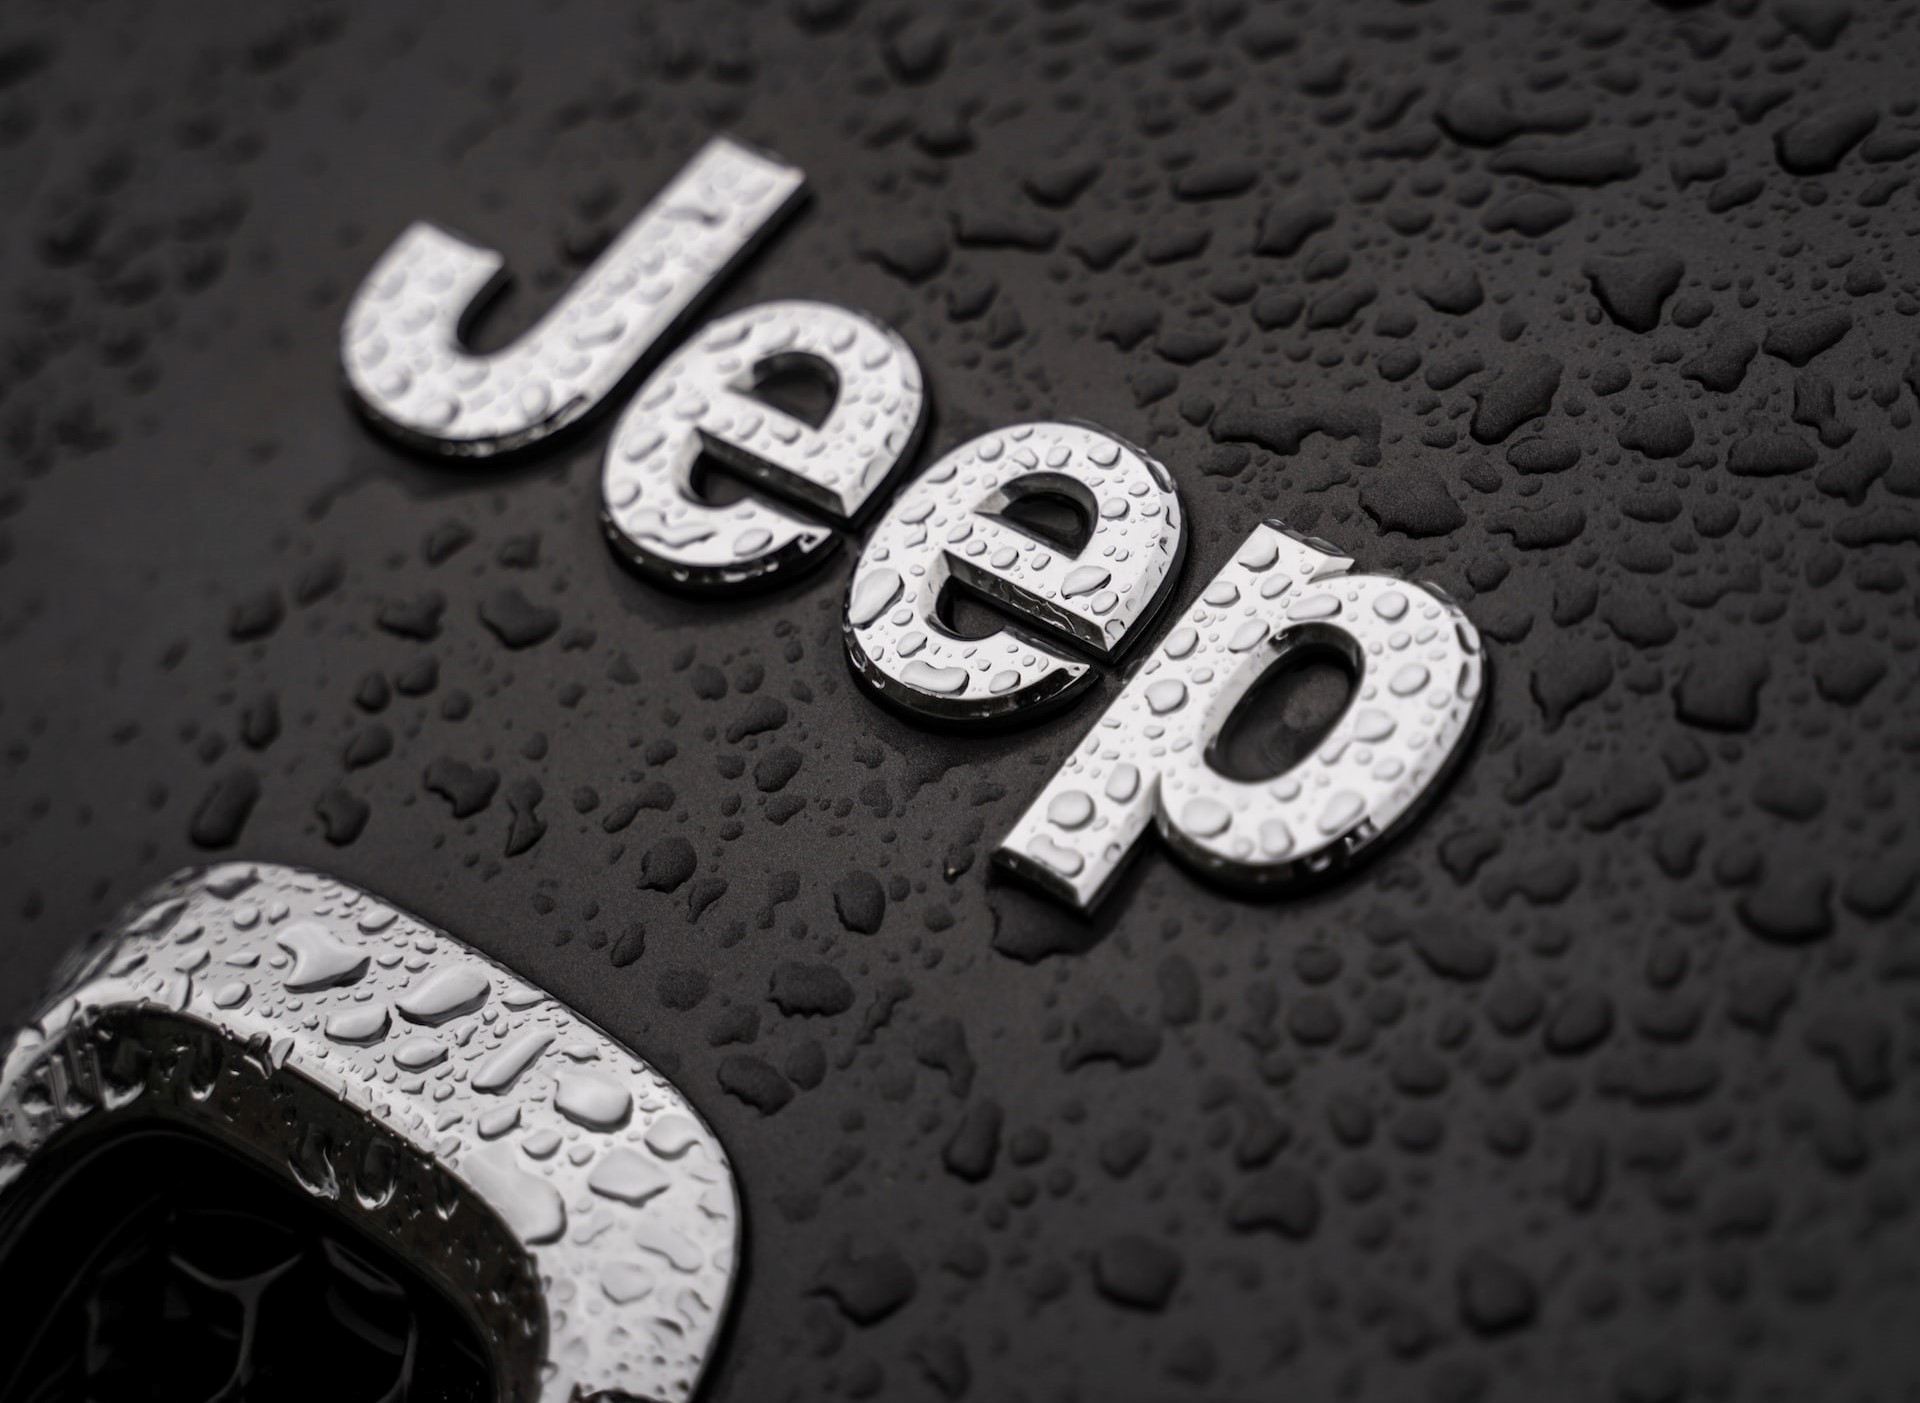 O Jeep Grand Cherokee 4xe possui atrativos muito além do consumo! Veja mais detalhes interessantes sobre esse carro incrível.